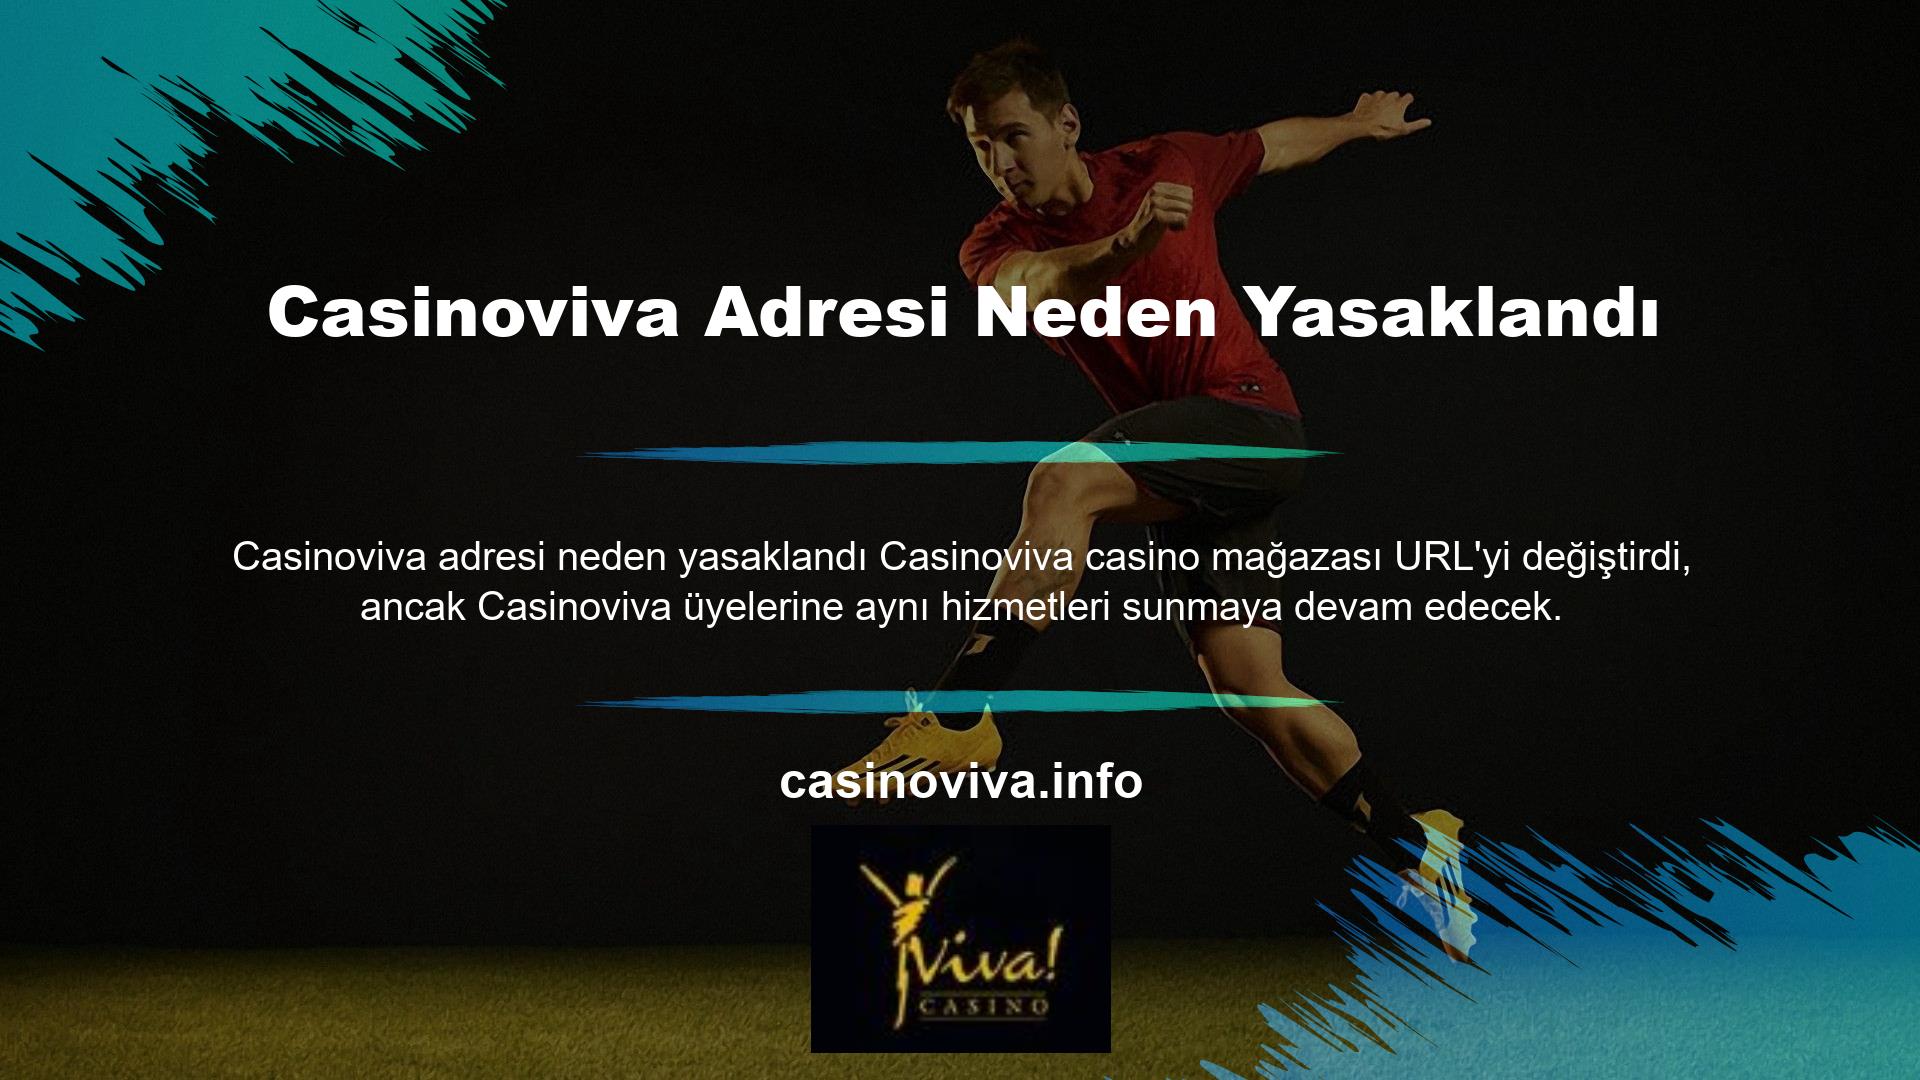 Casinoviva Yeni Adresi, spor bahisleri ve casino oyun sektörüyle aynı kalite ve altyapıyı sunuyor